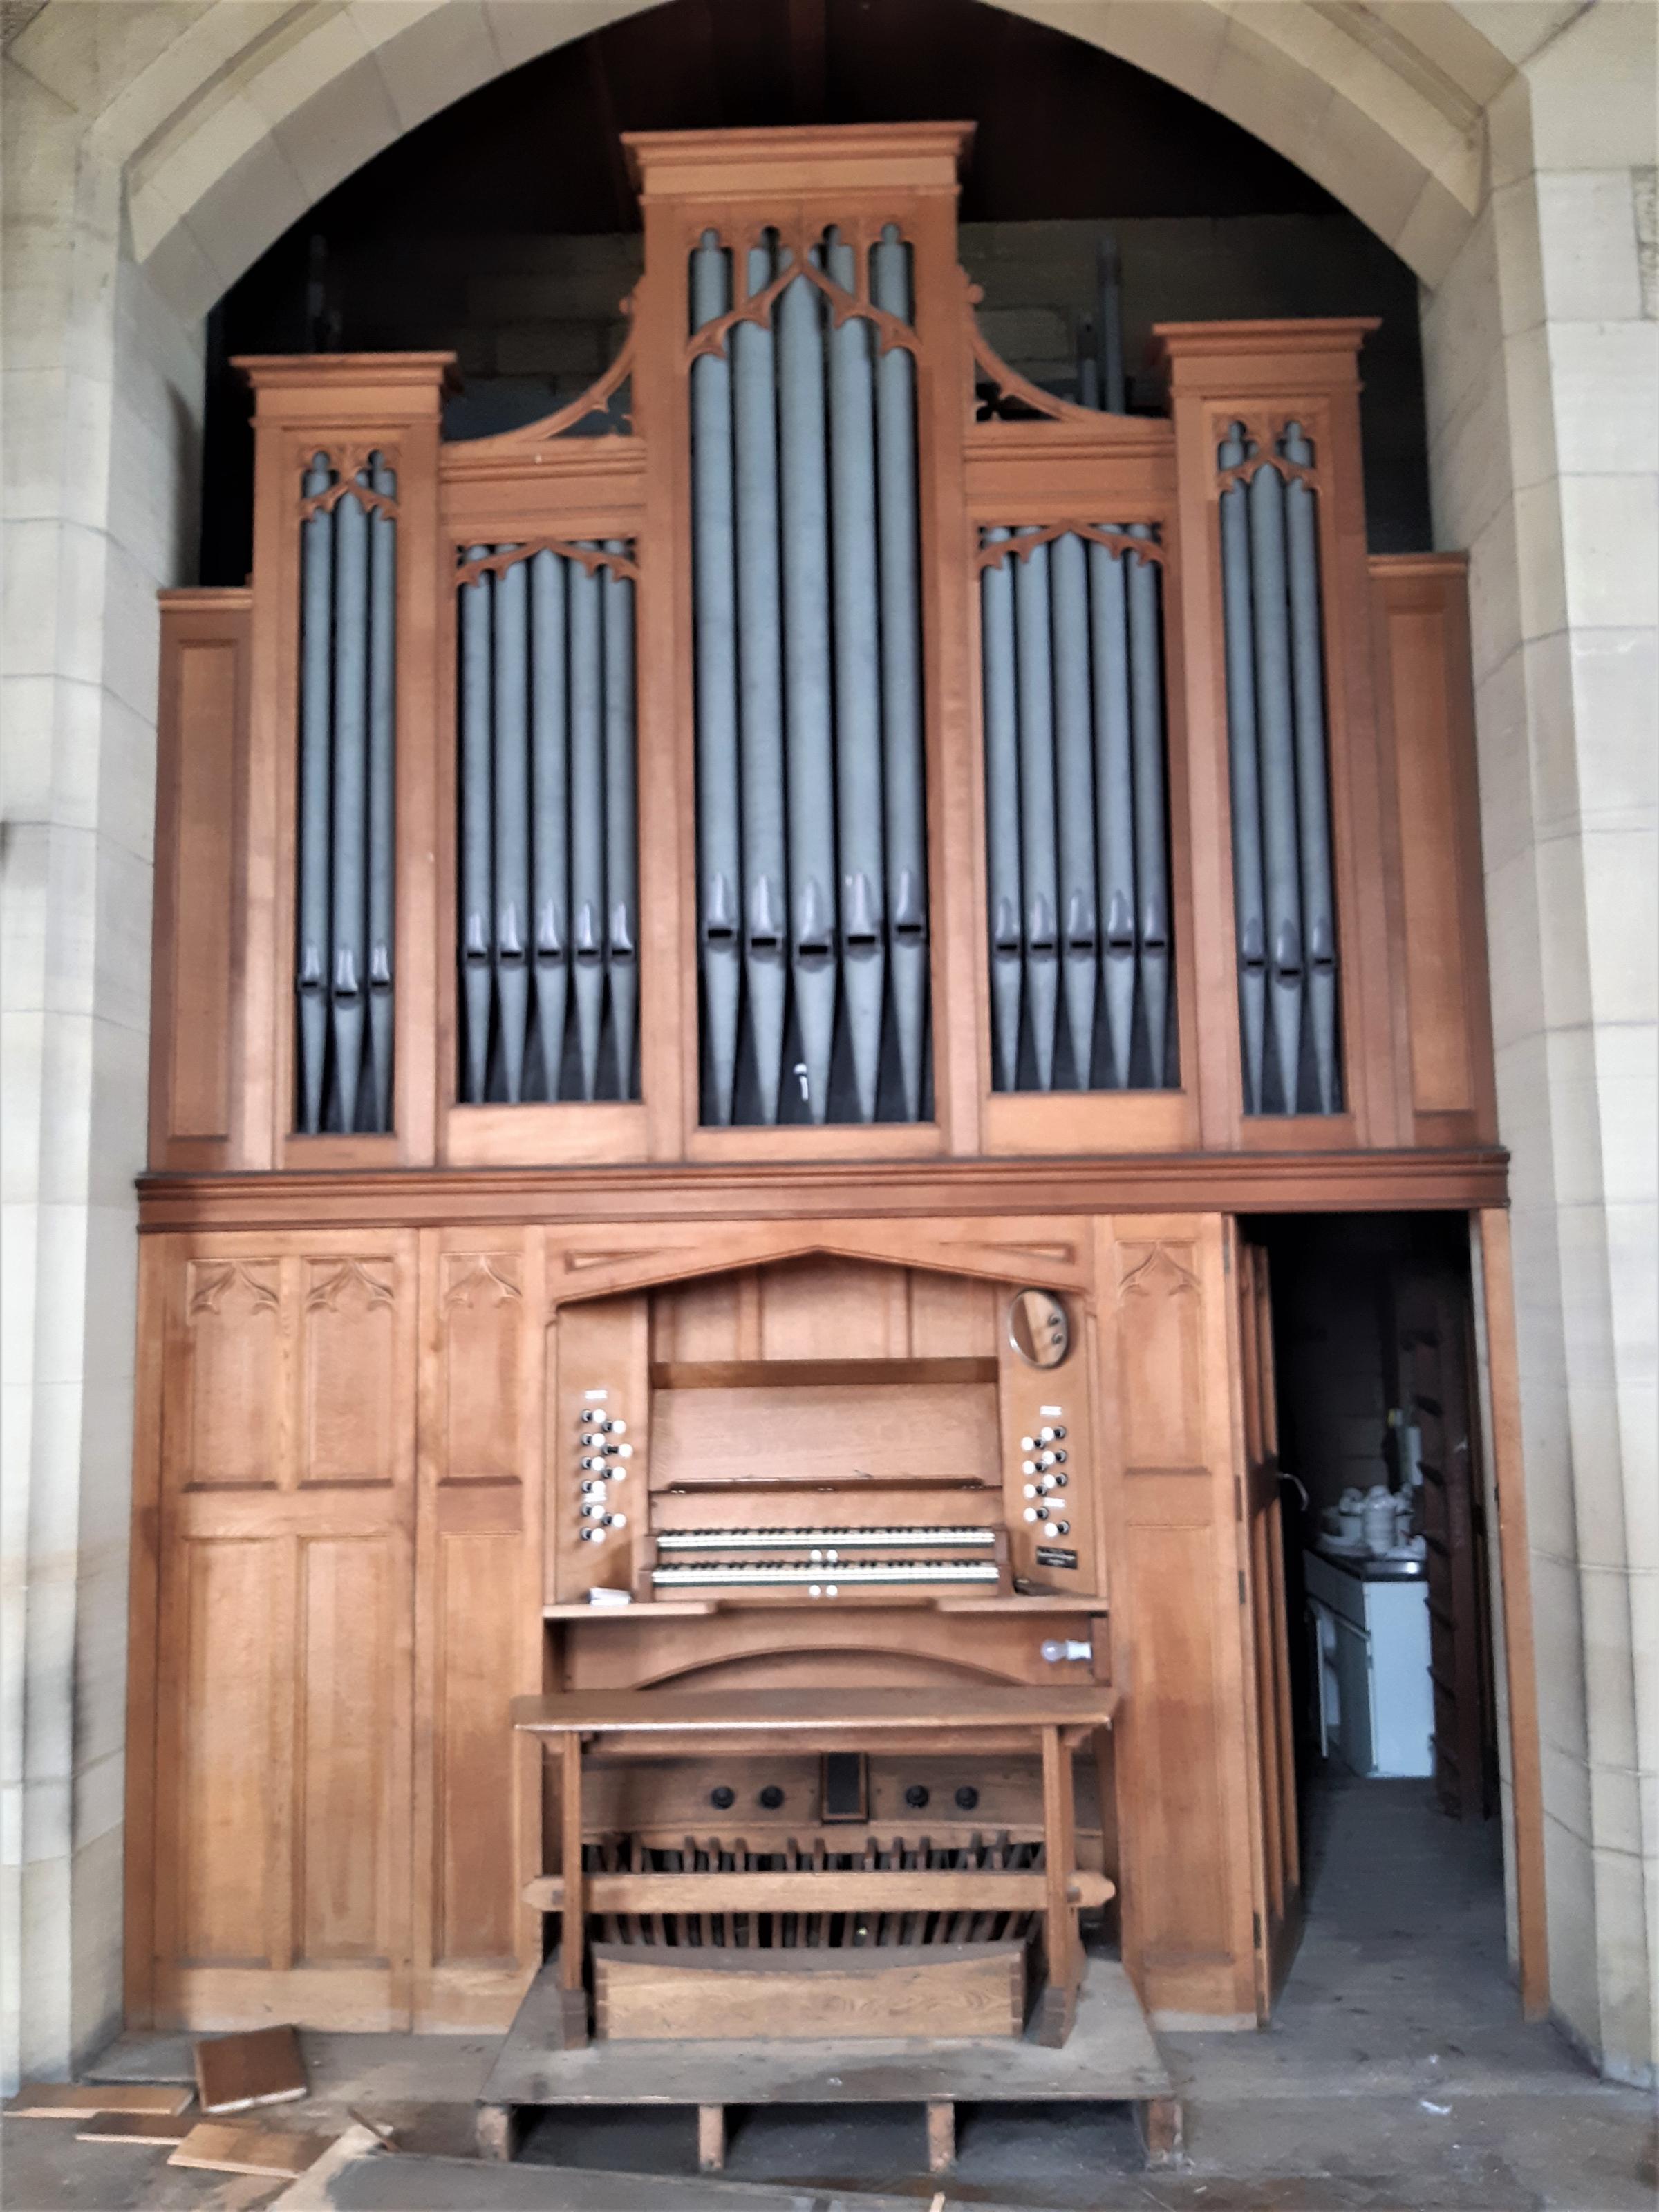 Organ inside St Marys Church, Northop Hall. 